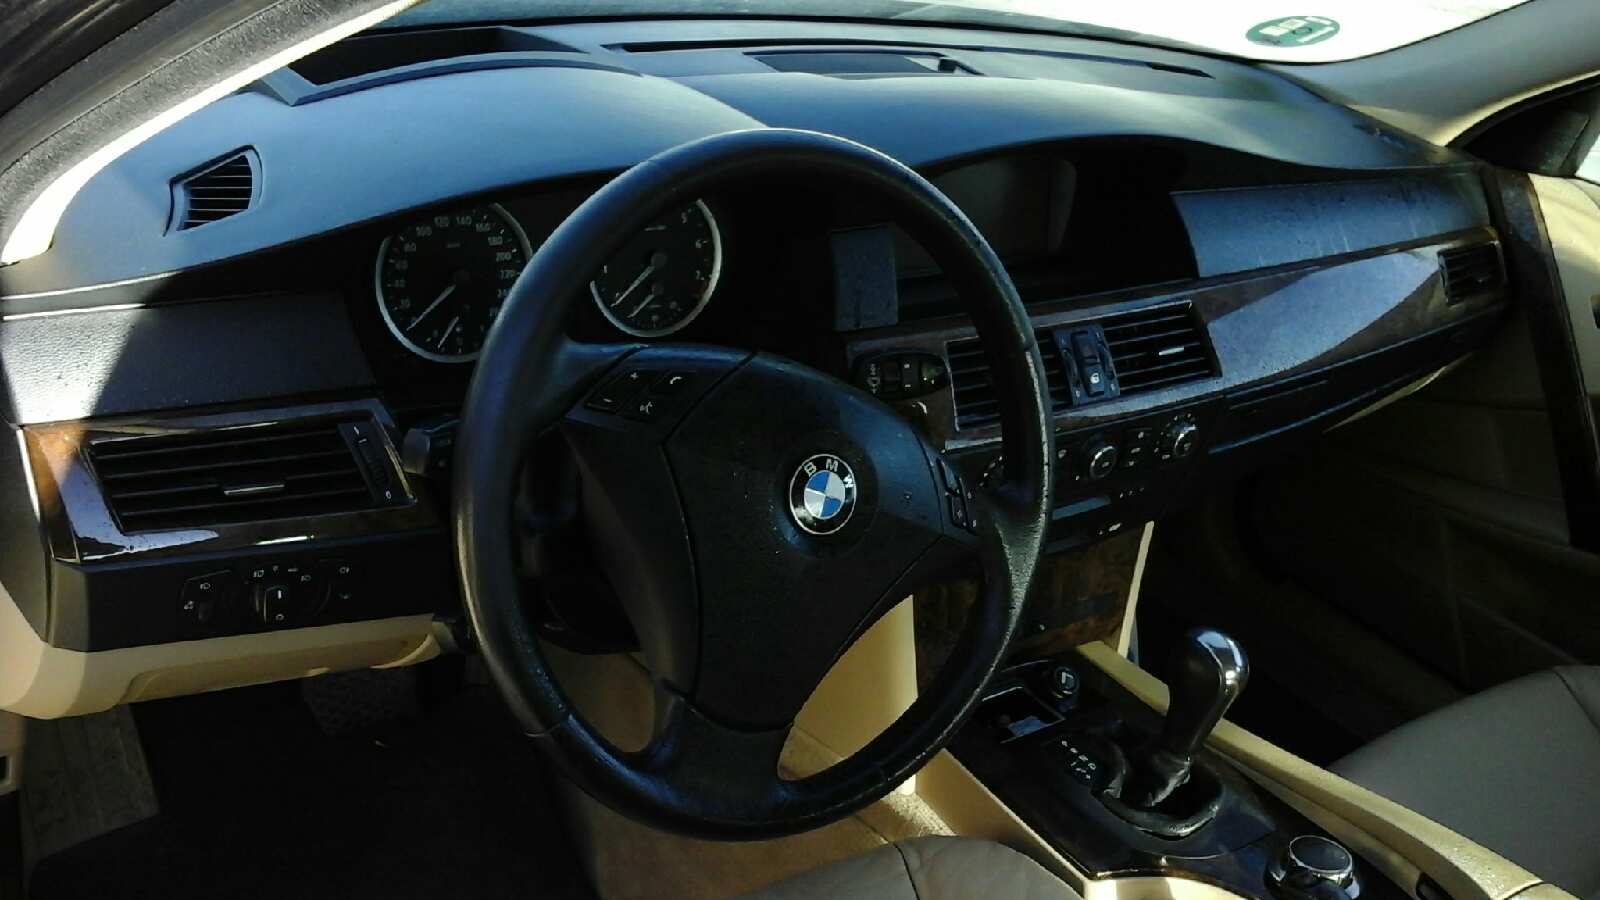 BMW 5 Series E60/E61 (2003-2010) Diffuser Fan 7726010101, 6726010104, SIEMENSVDO 23657330